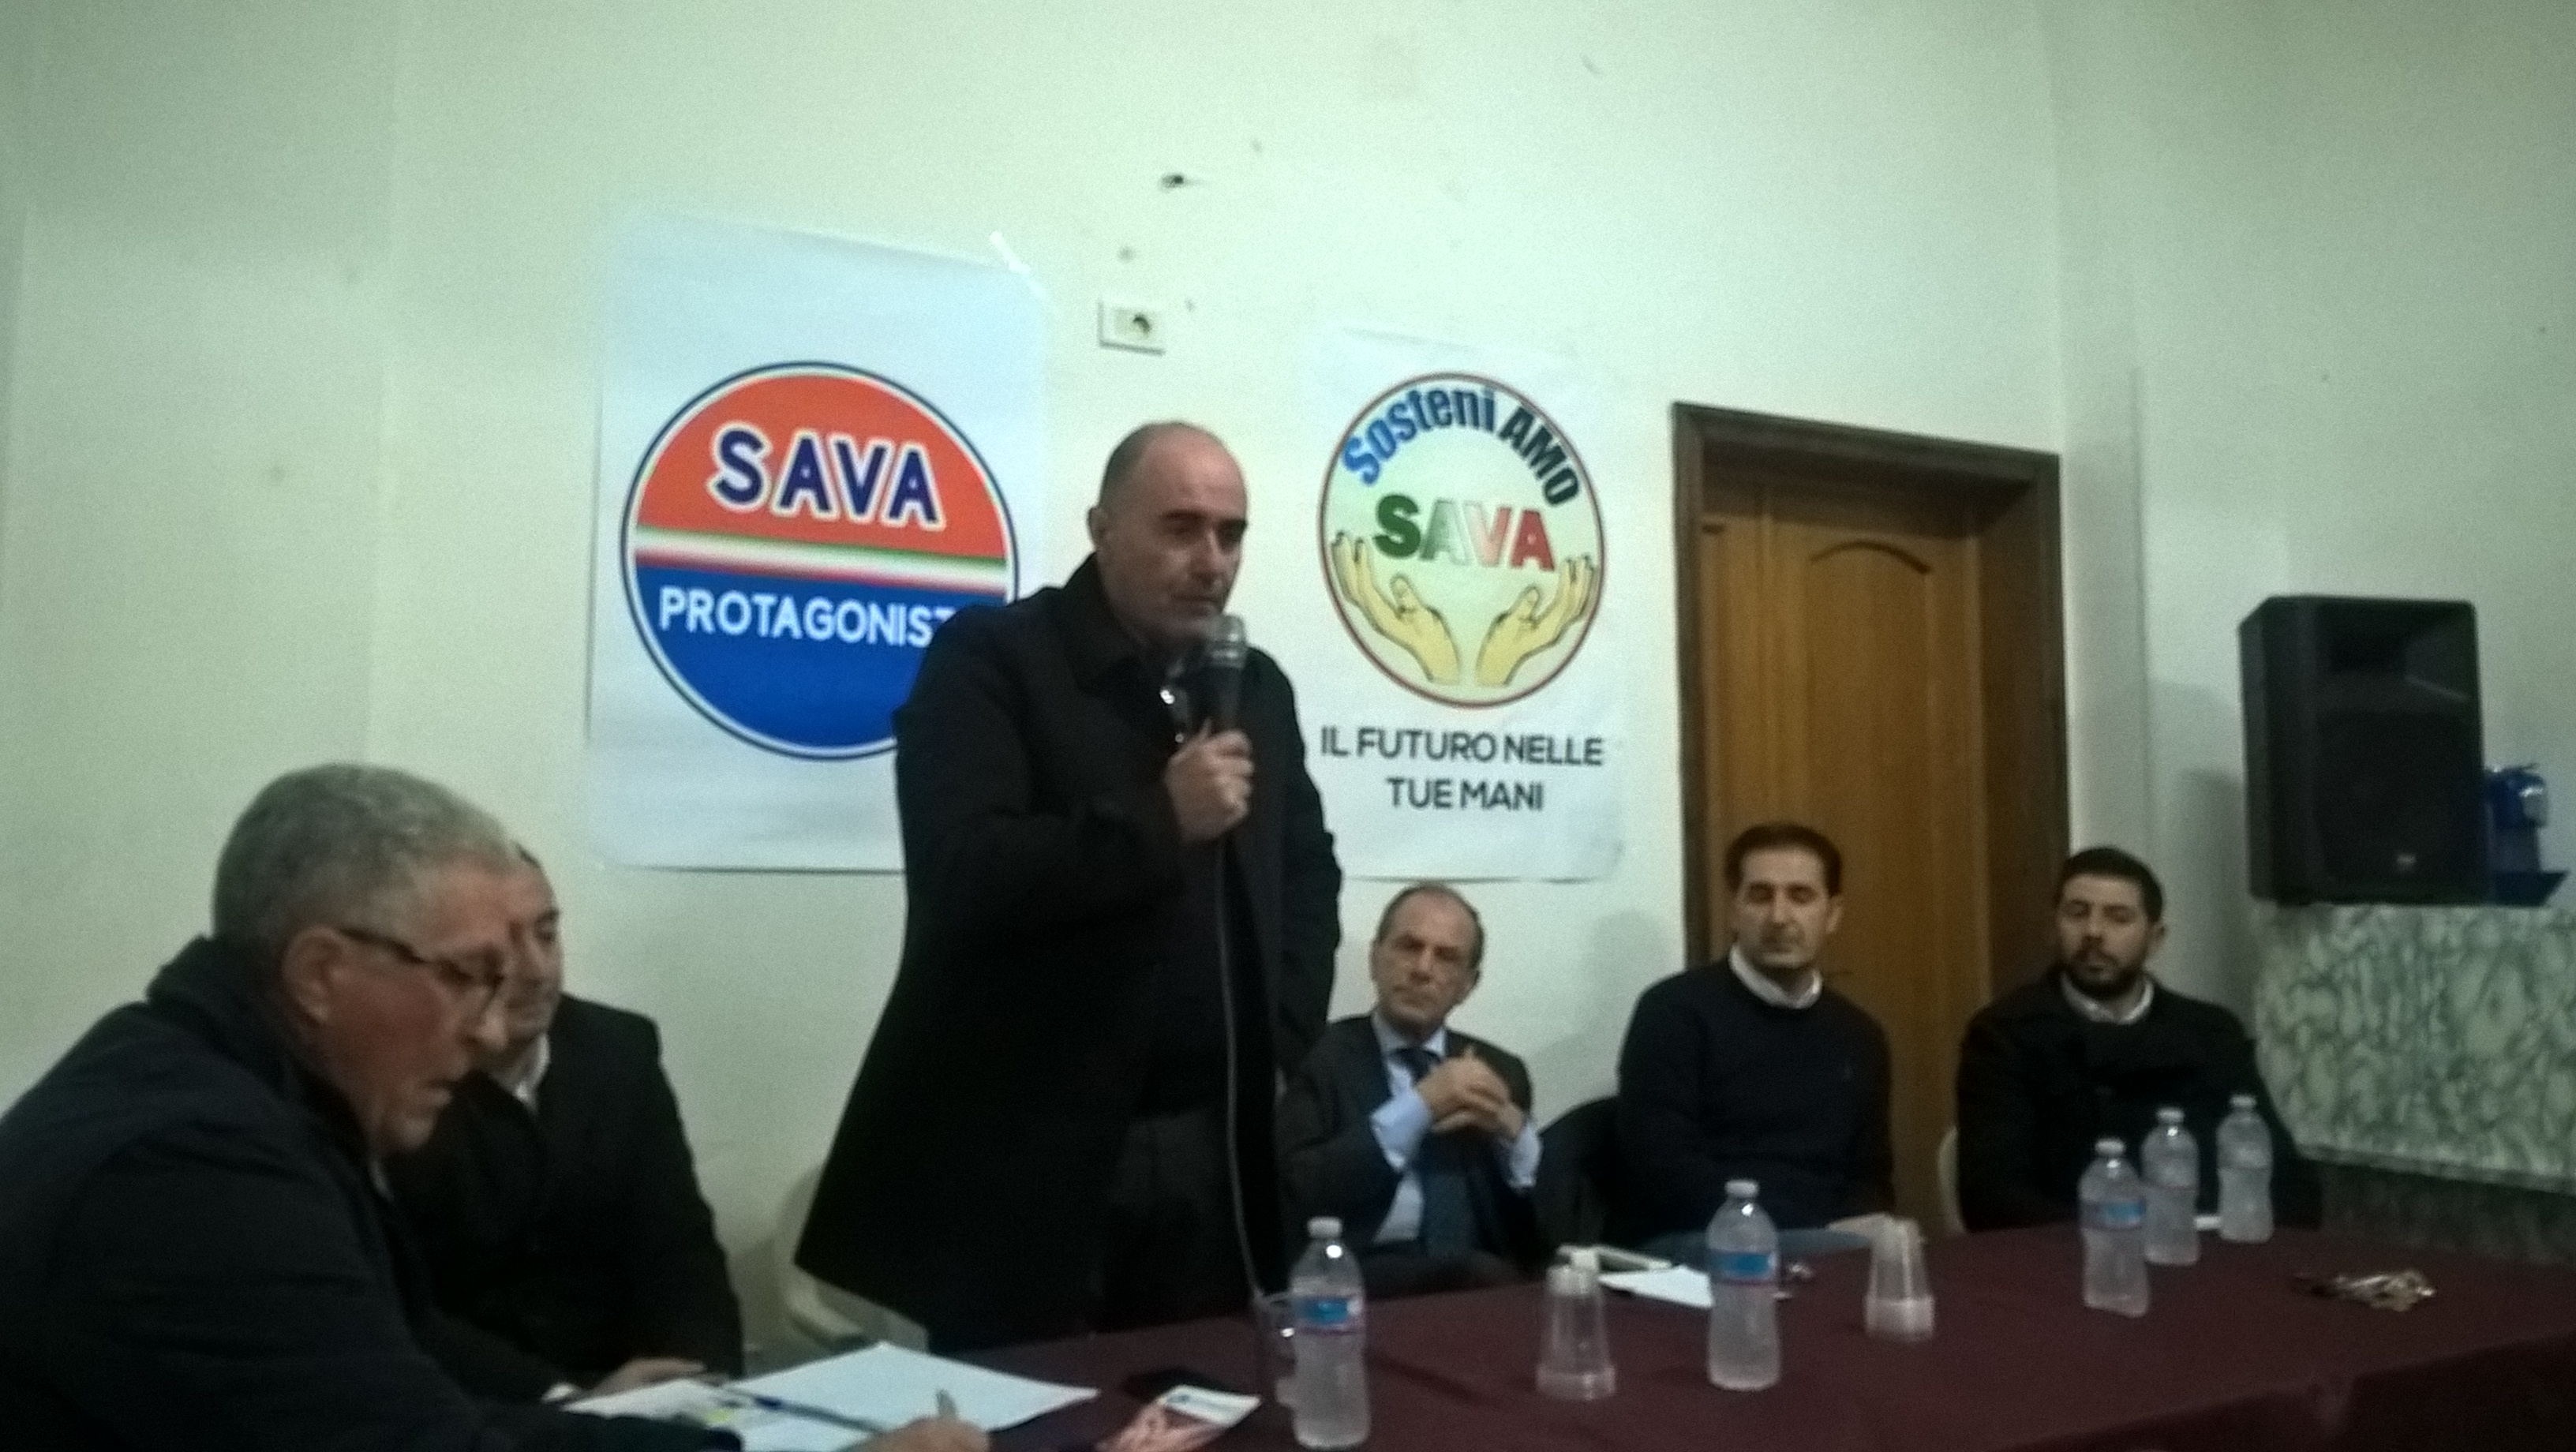 SAVA. Presentazione ufficiale delle due liste civiche “Sava Protagonista” e “SosteniAmo Sava” alla presenza del Consigliere regionale Vito Schittulli